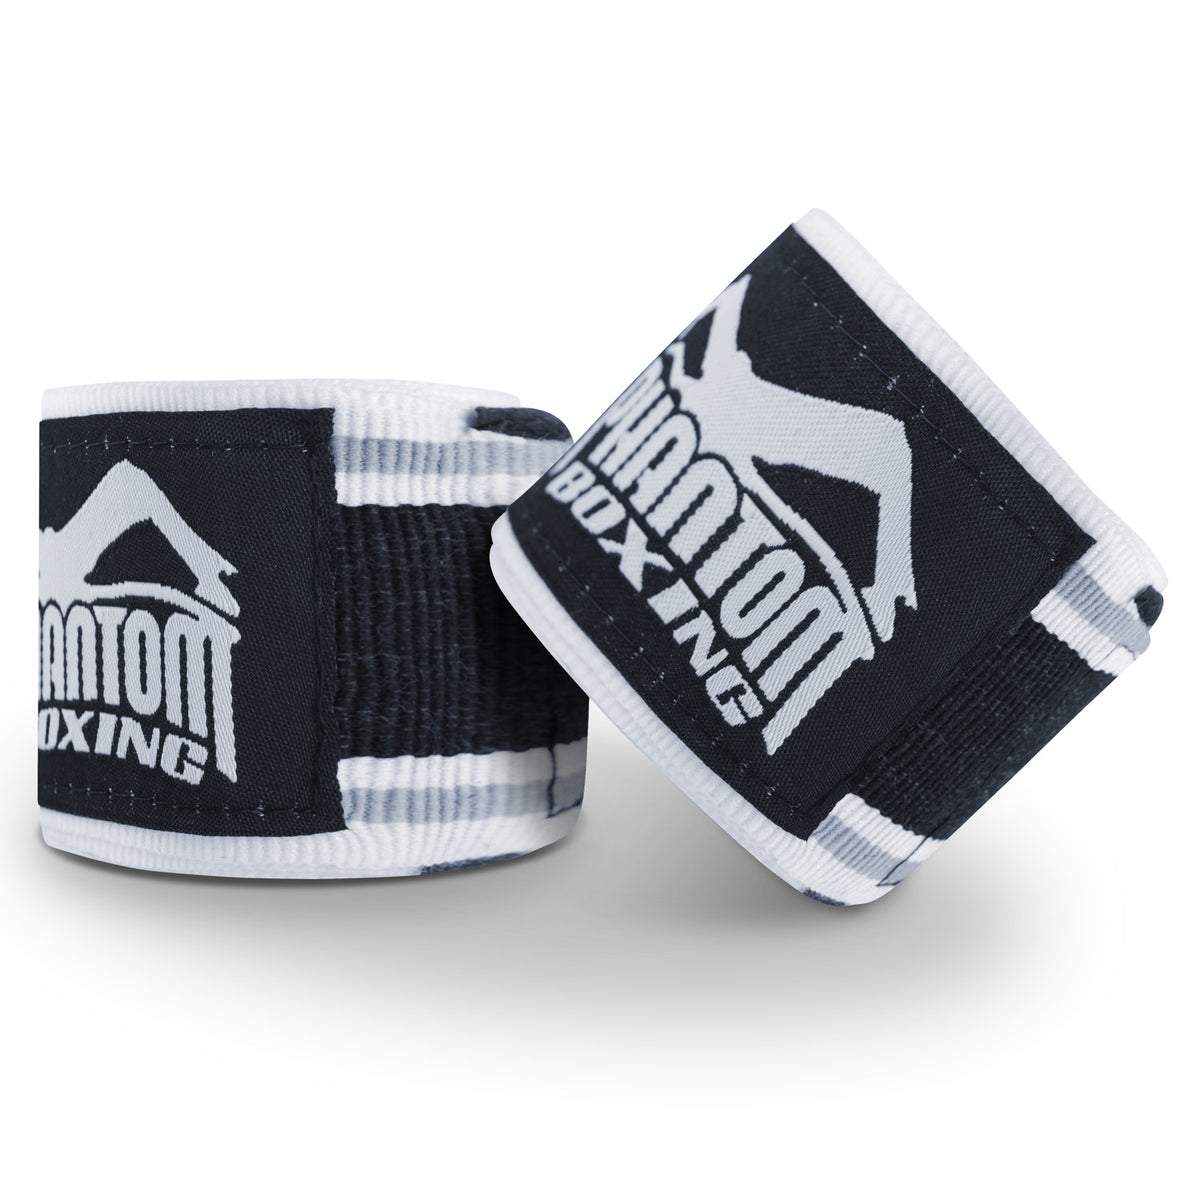 Phantom Boxbandagen für dein Kampfsporttraining.  Ideal für MMA, Muay Thai und Kickboxen. 450cm in den Farben Schwarz/Weiss.